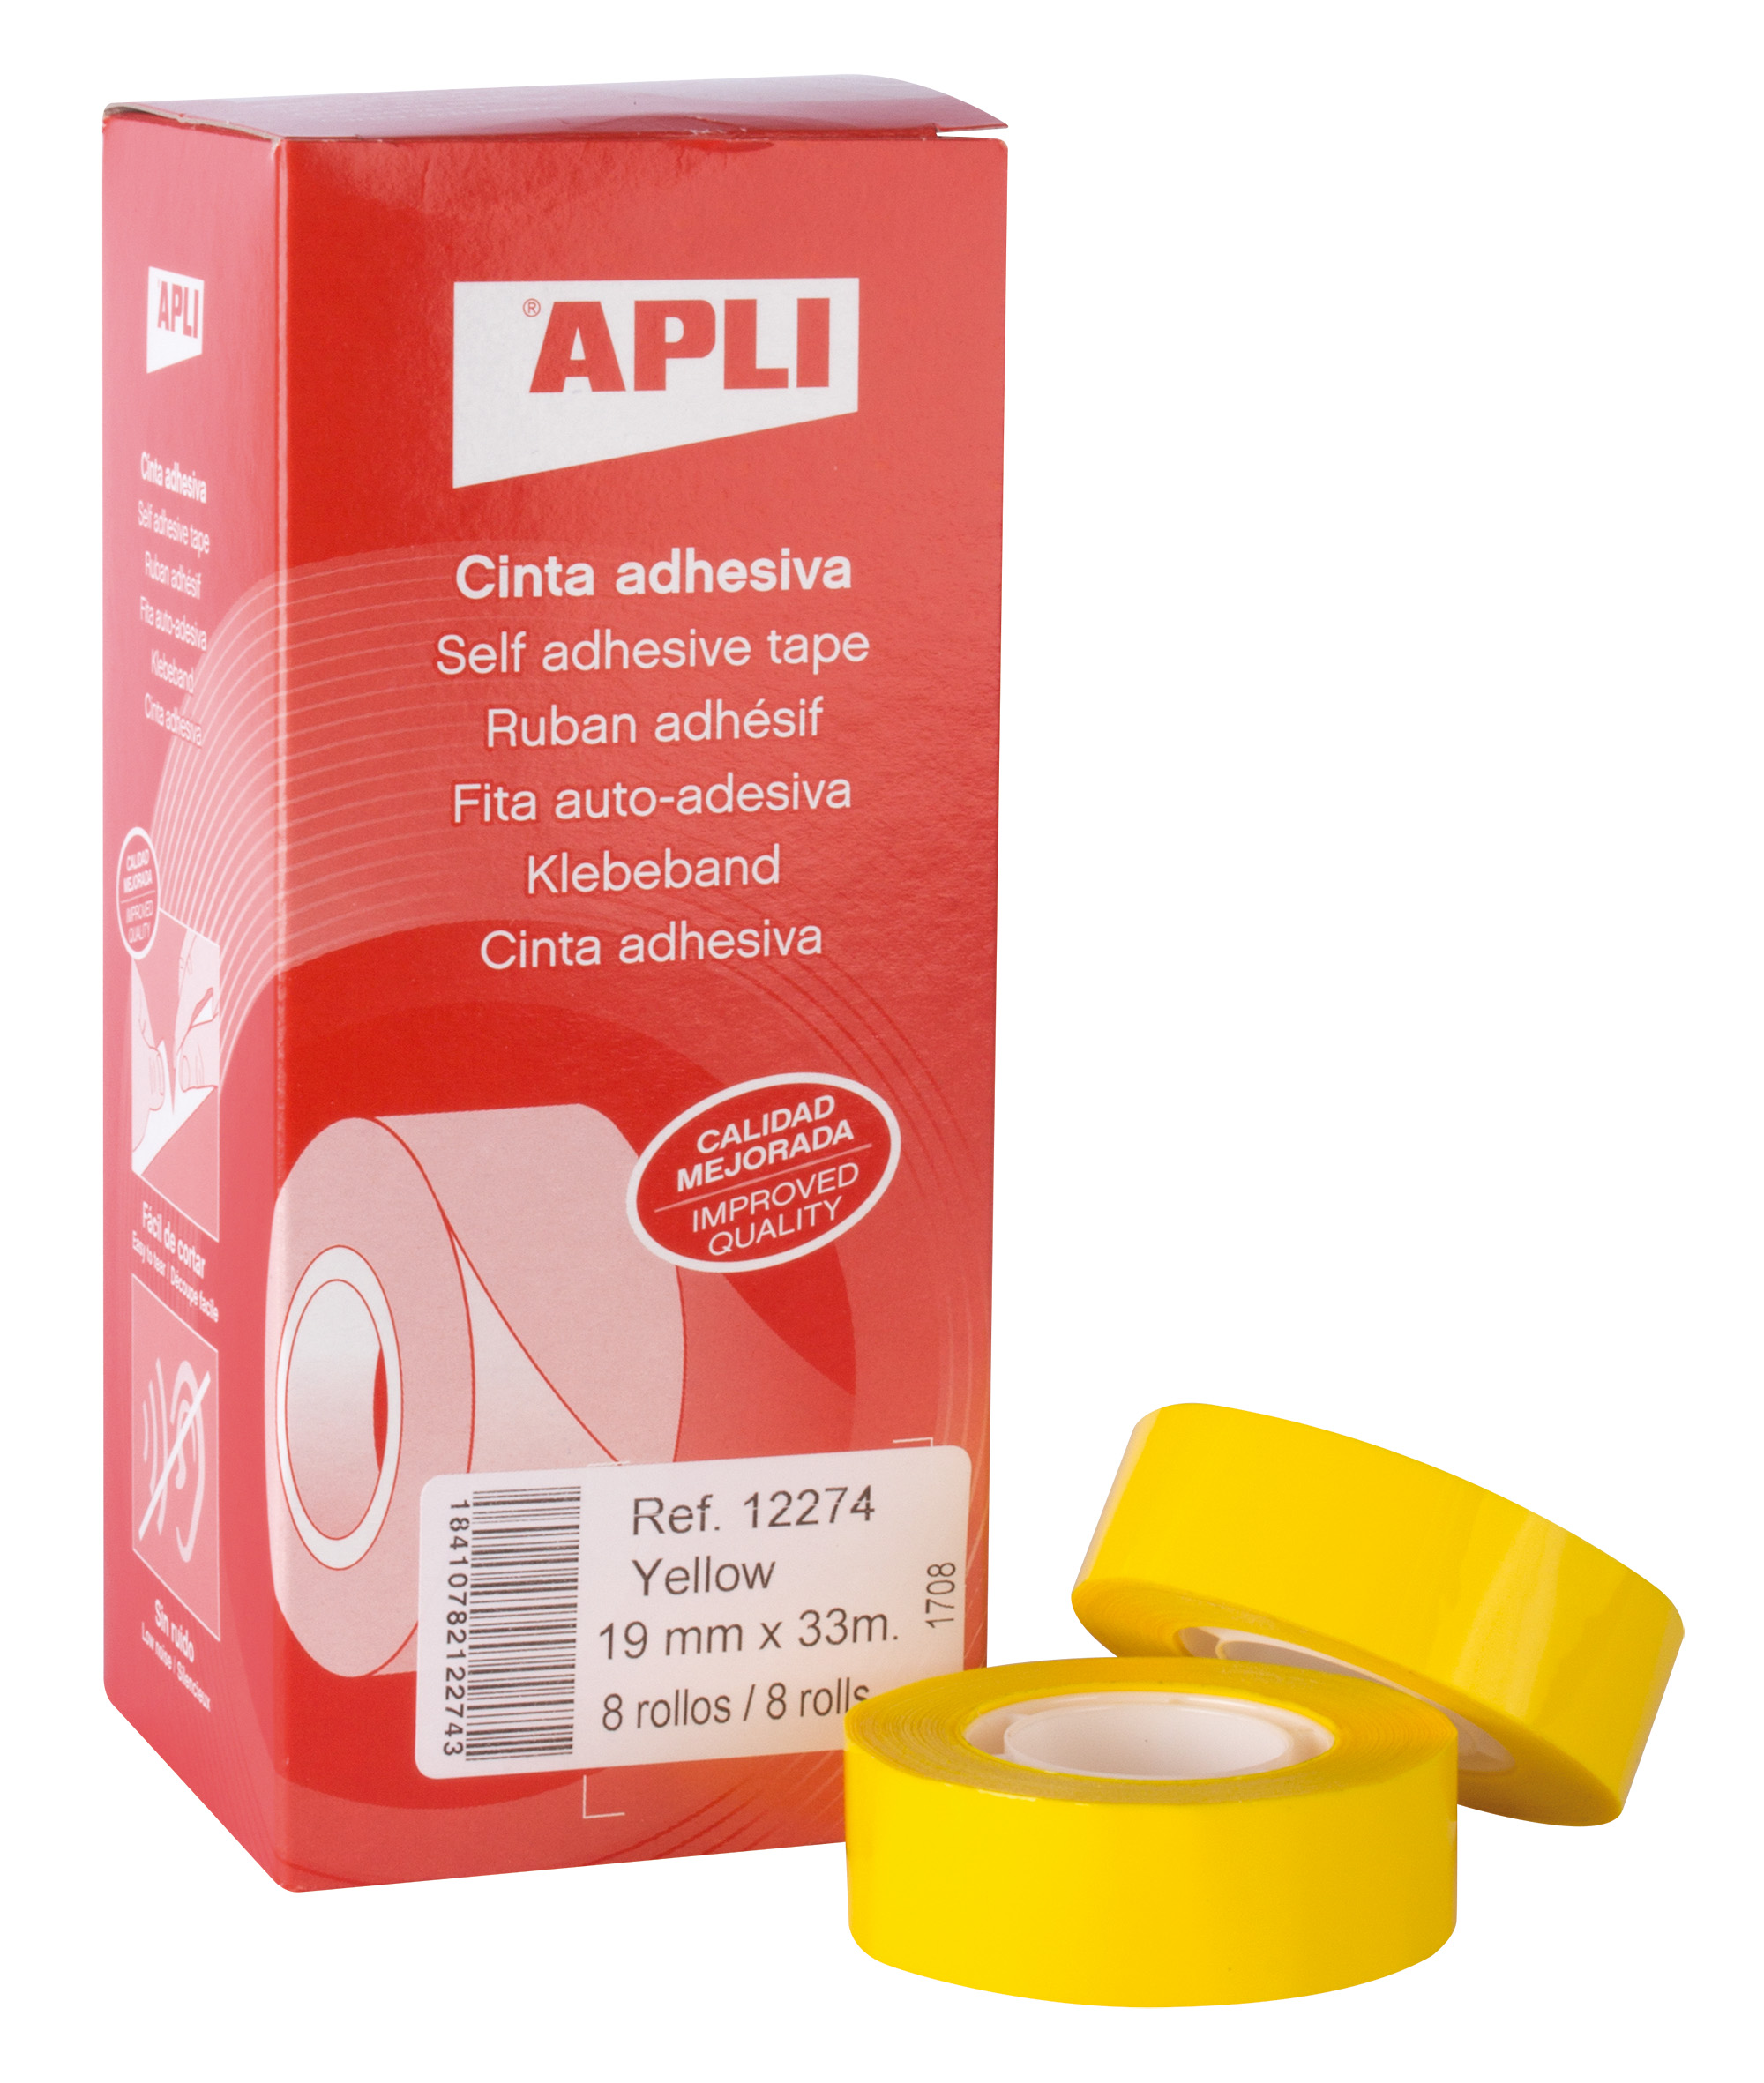 Apli Cinta Adhesiva Amarilla 19mm x 33m - Resistente al Agua y a la Intemperie - Facil de Cortar con